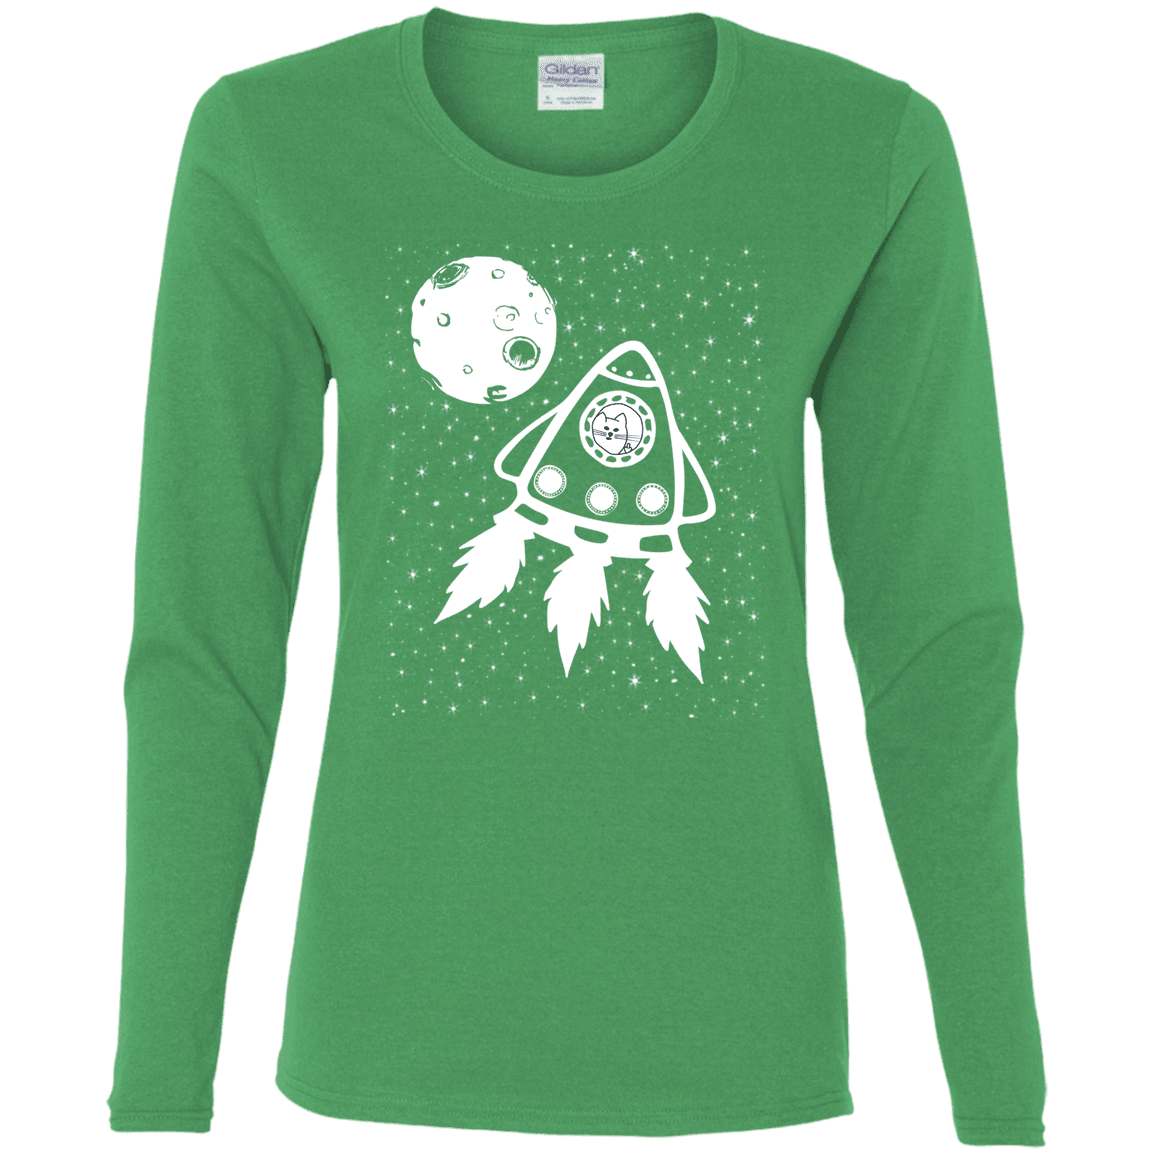 T-Shirts Irish Green / S Catstronaut Women's Long Sleeve T-Shirt